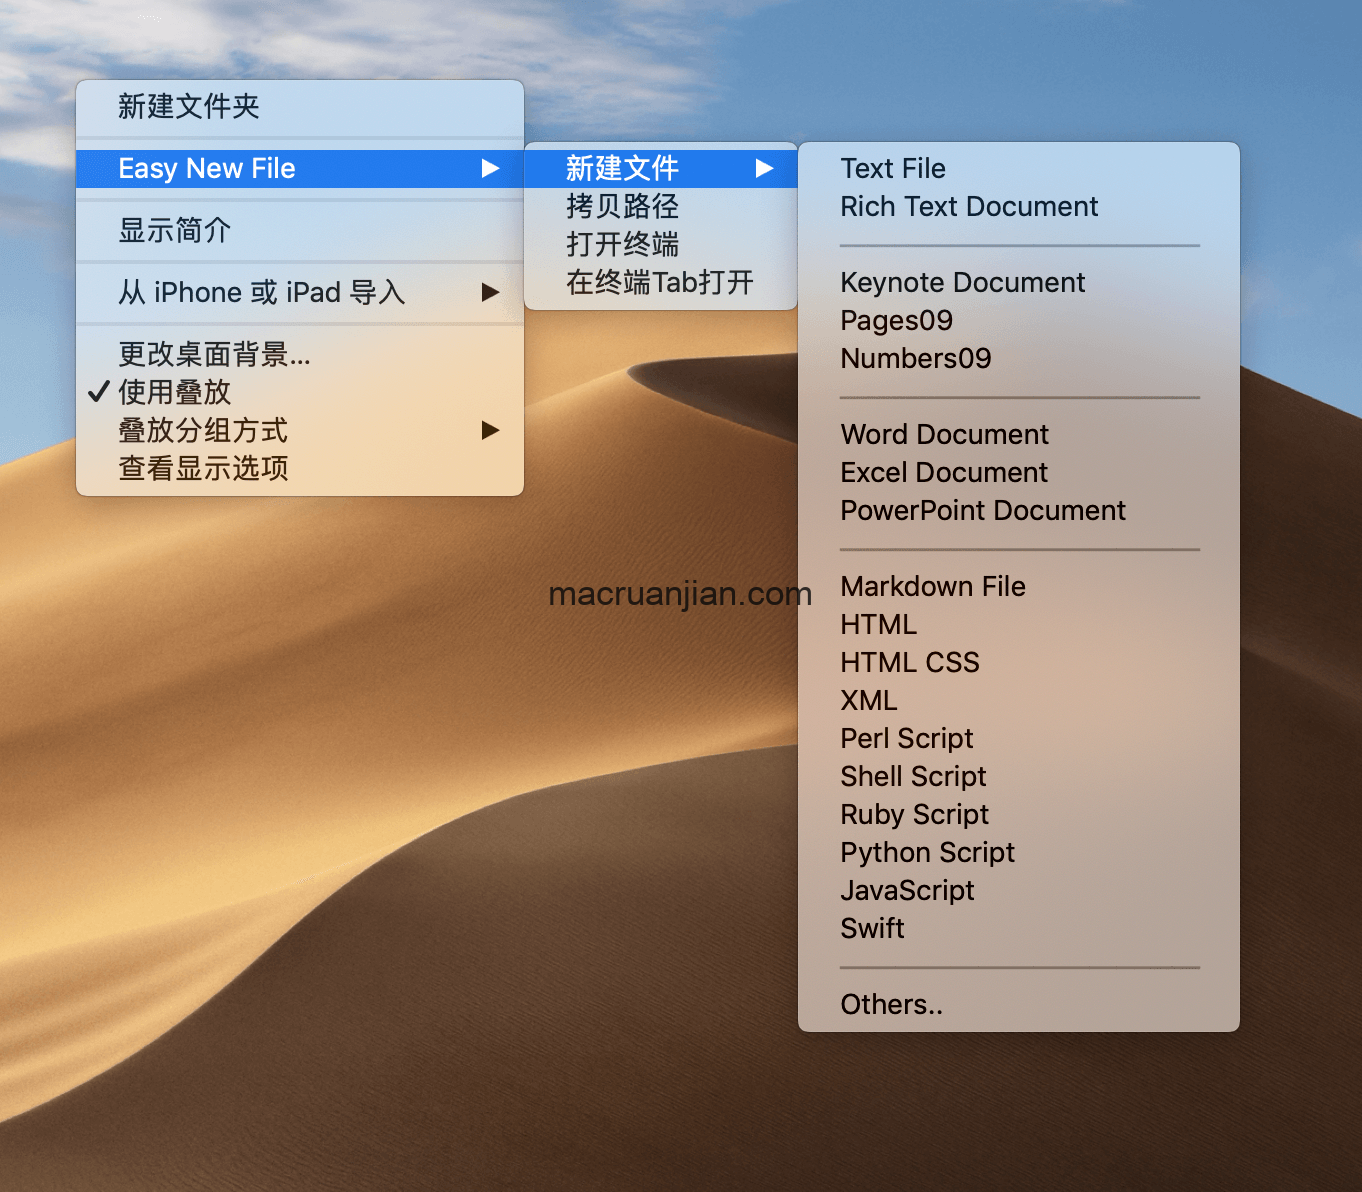 Easy New File 5.6 中文版 mac增加右键新建